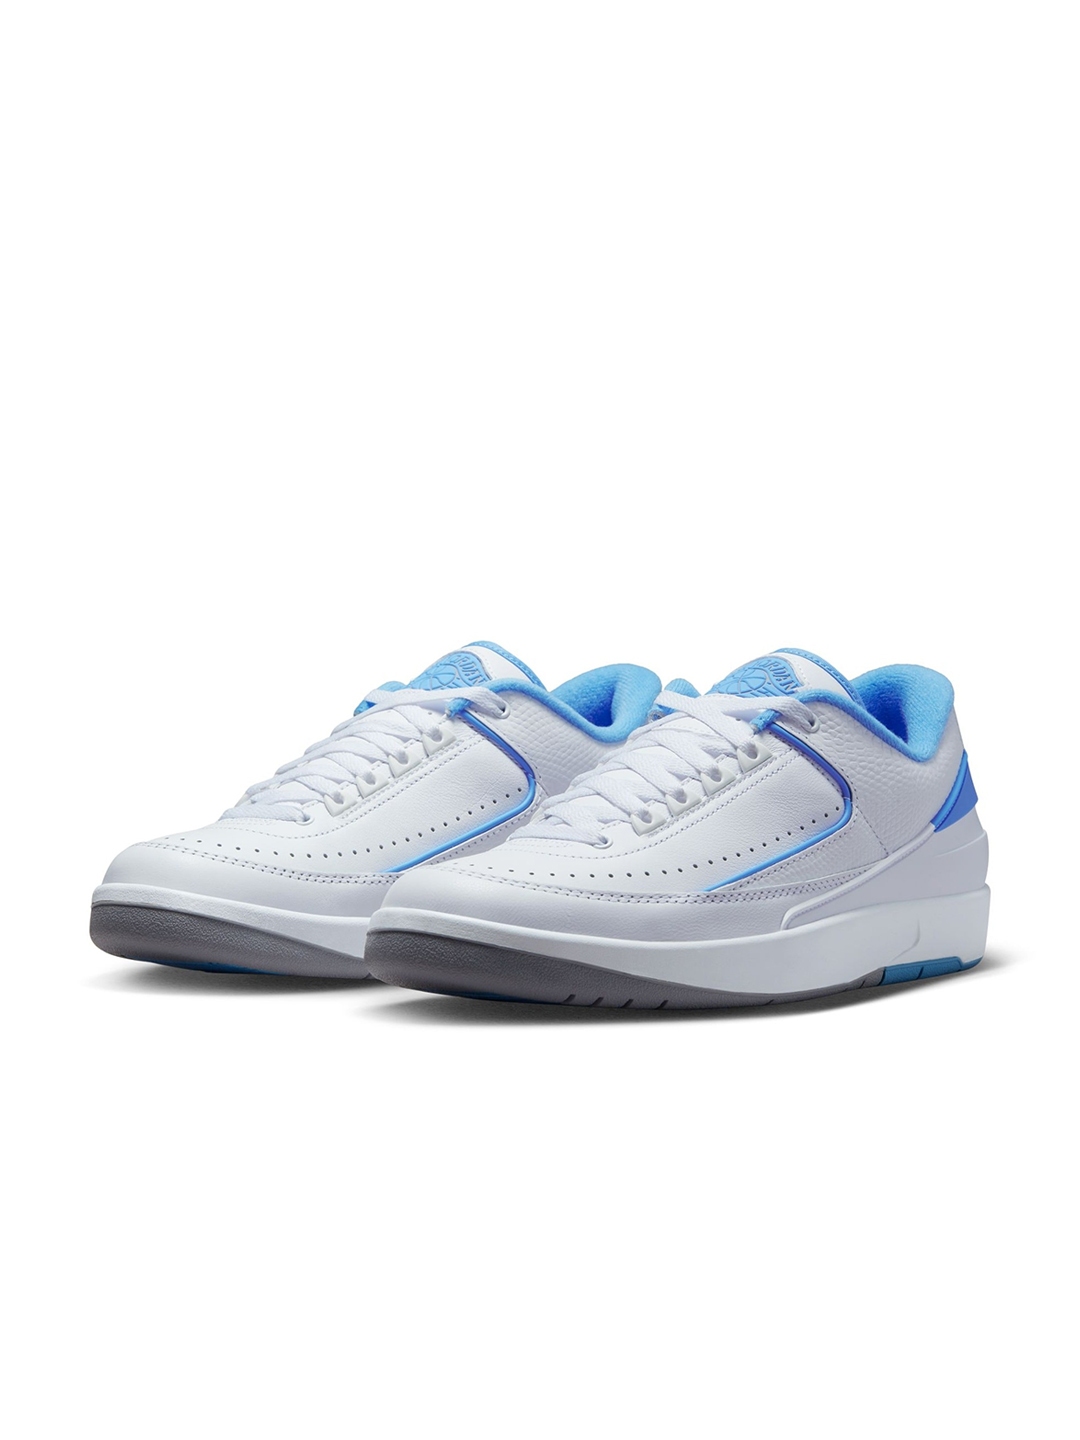 Buy Nike Men Air Jordan 2 Retro Low Sneakers - Casual Shoes for Men ...